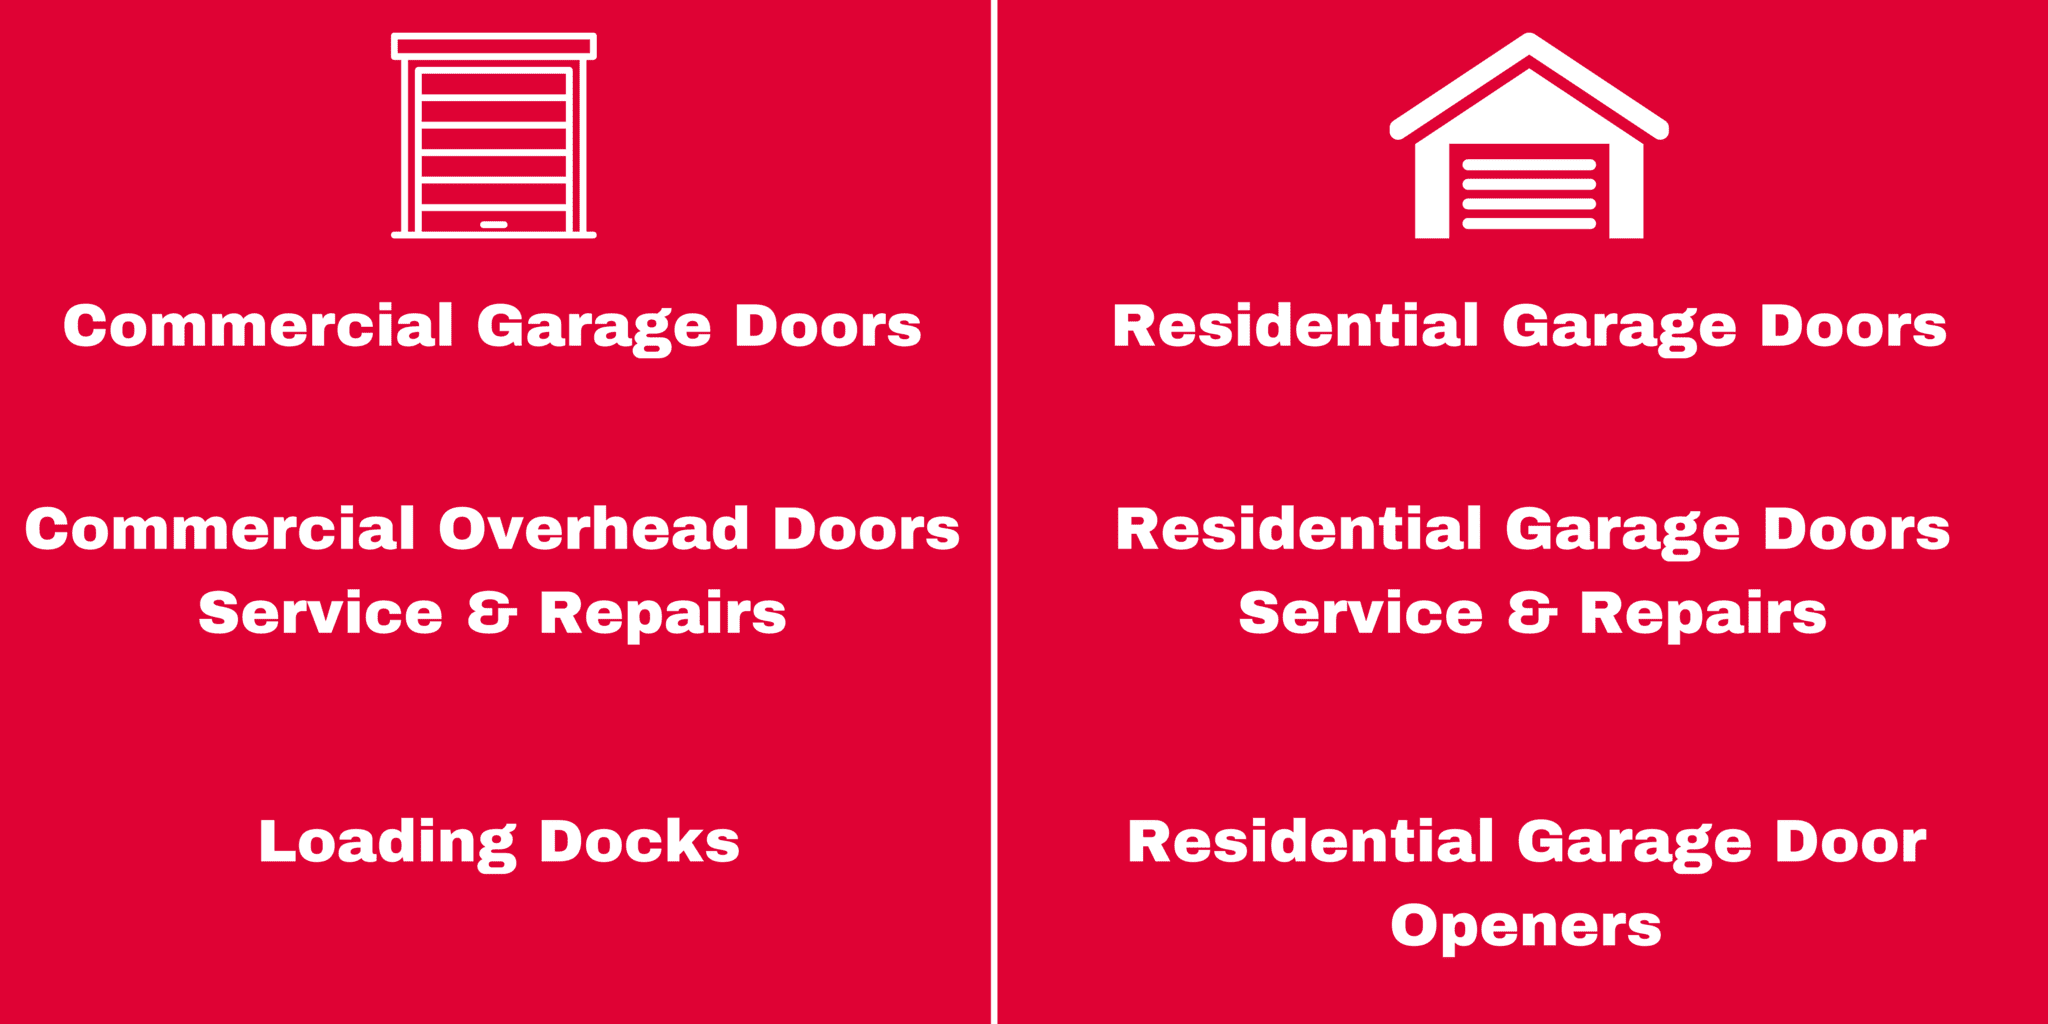 Overhead Door Company Of The Northland Commercial Garage Doors & Residential Garage Doors